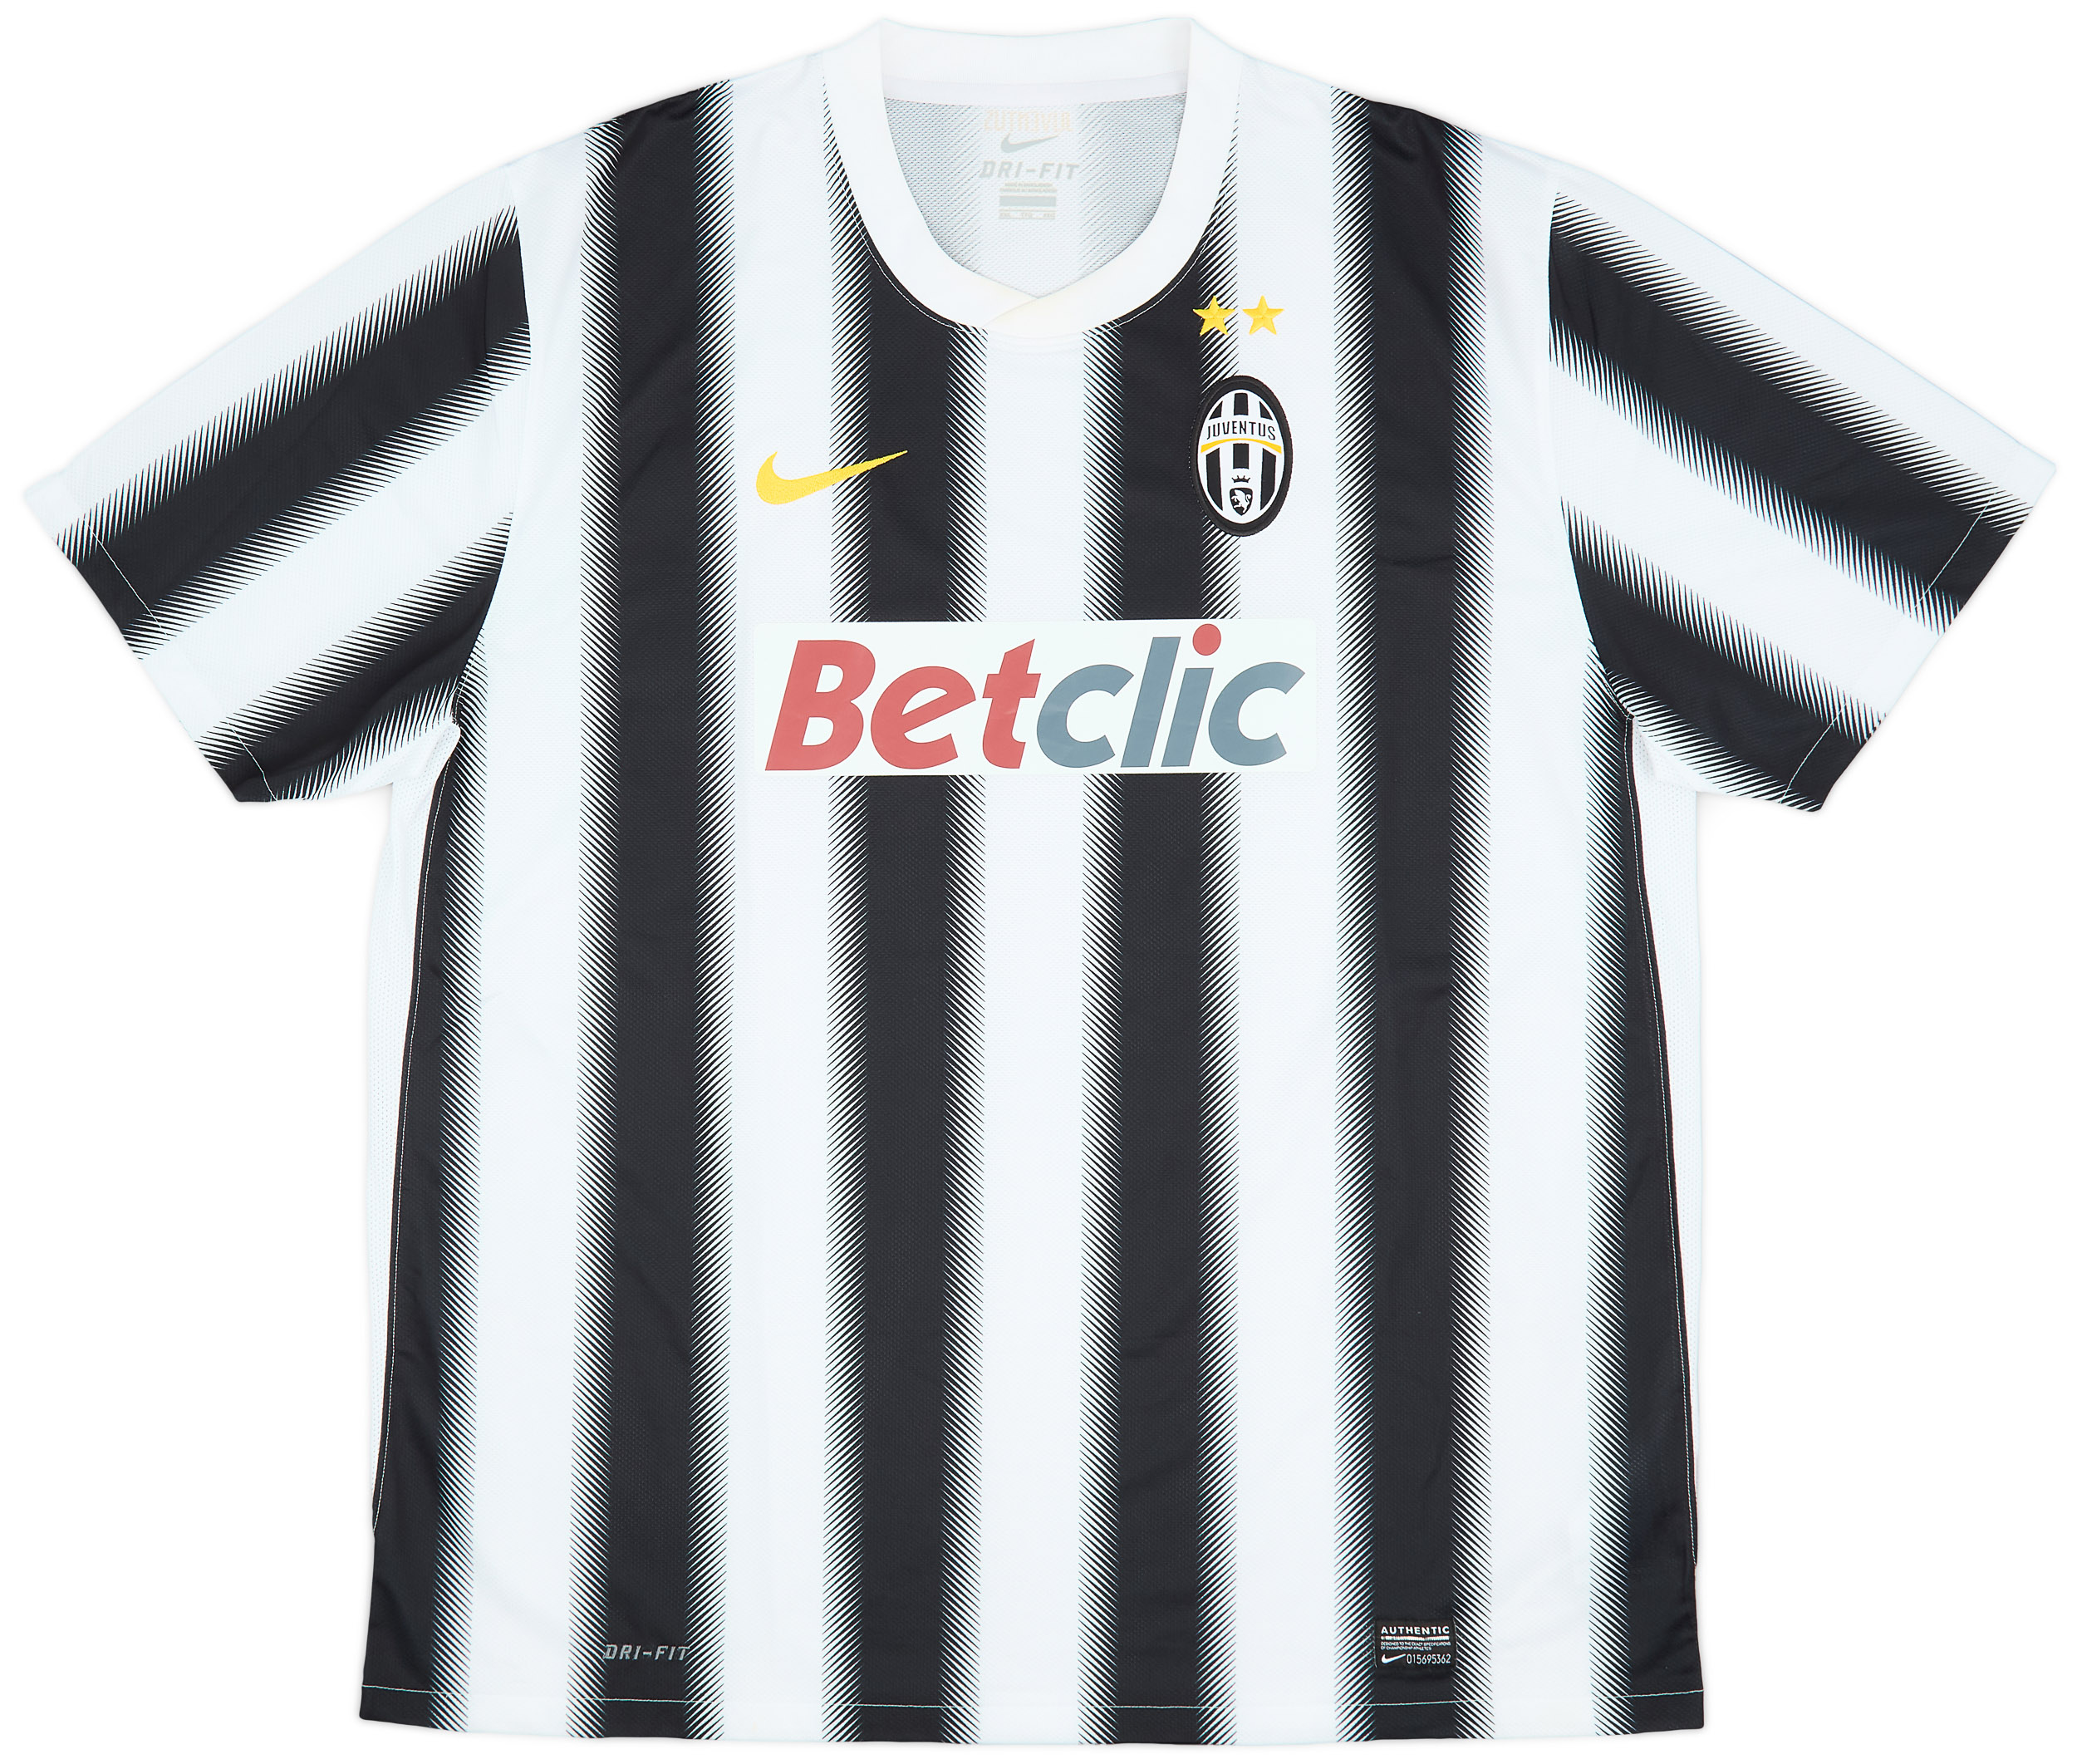 2011-12 Juventus Home Shirt - 9/10 - ()